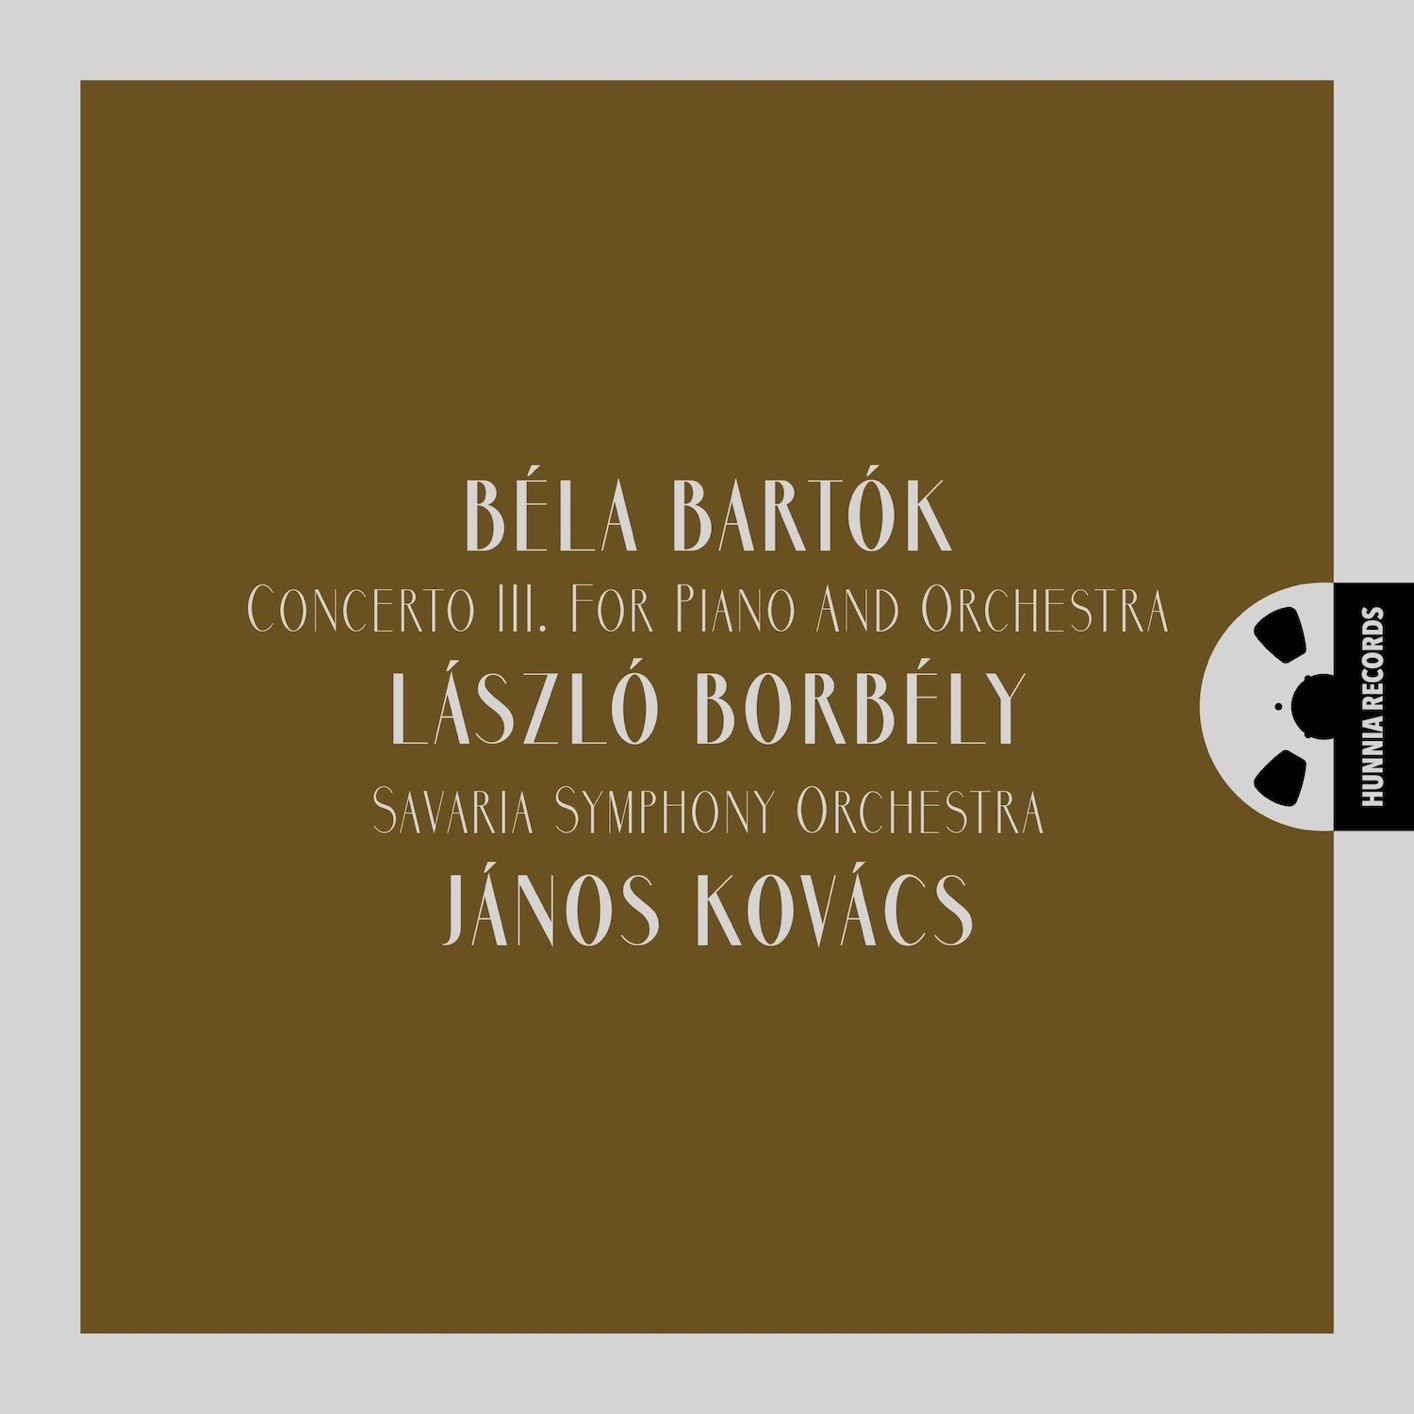 László Borbély, Savaria Symphony Orchestra, János Kovács - Concerto III for Piano and Orchestra (2023) [FLAC 24bit/192kHz] Download